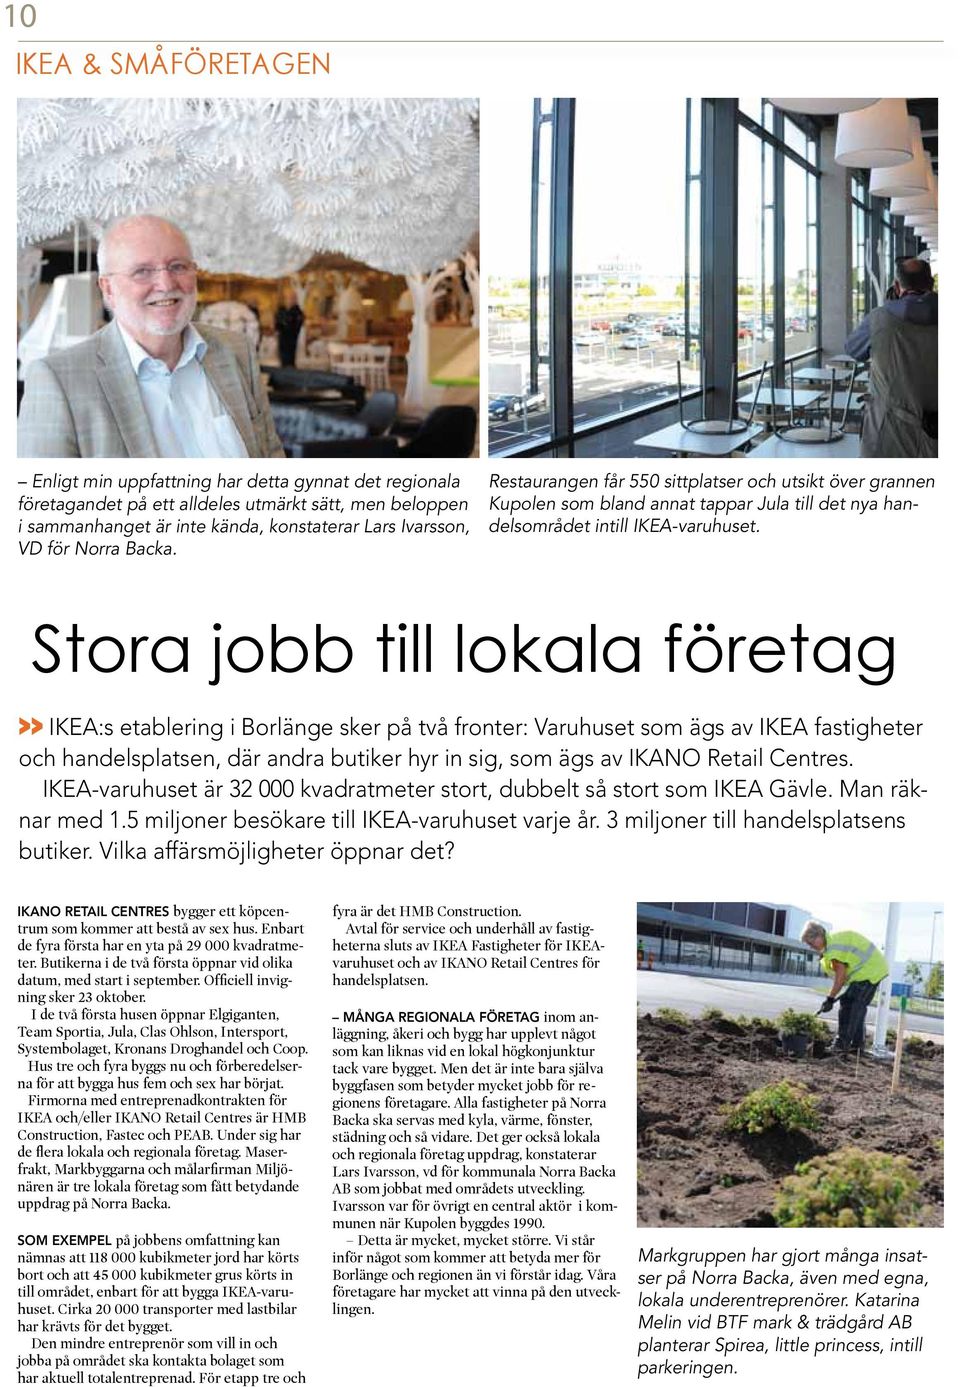 Stora jobb till lokala företag >> IKEA:s etablering i Borlänge sker på två fronter: Varuhuset som ägs av IKEA fastigheter och handelsplatsen, där andra butiker hyr in sig, som ägs av IKANO Retail